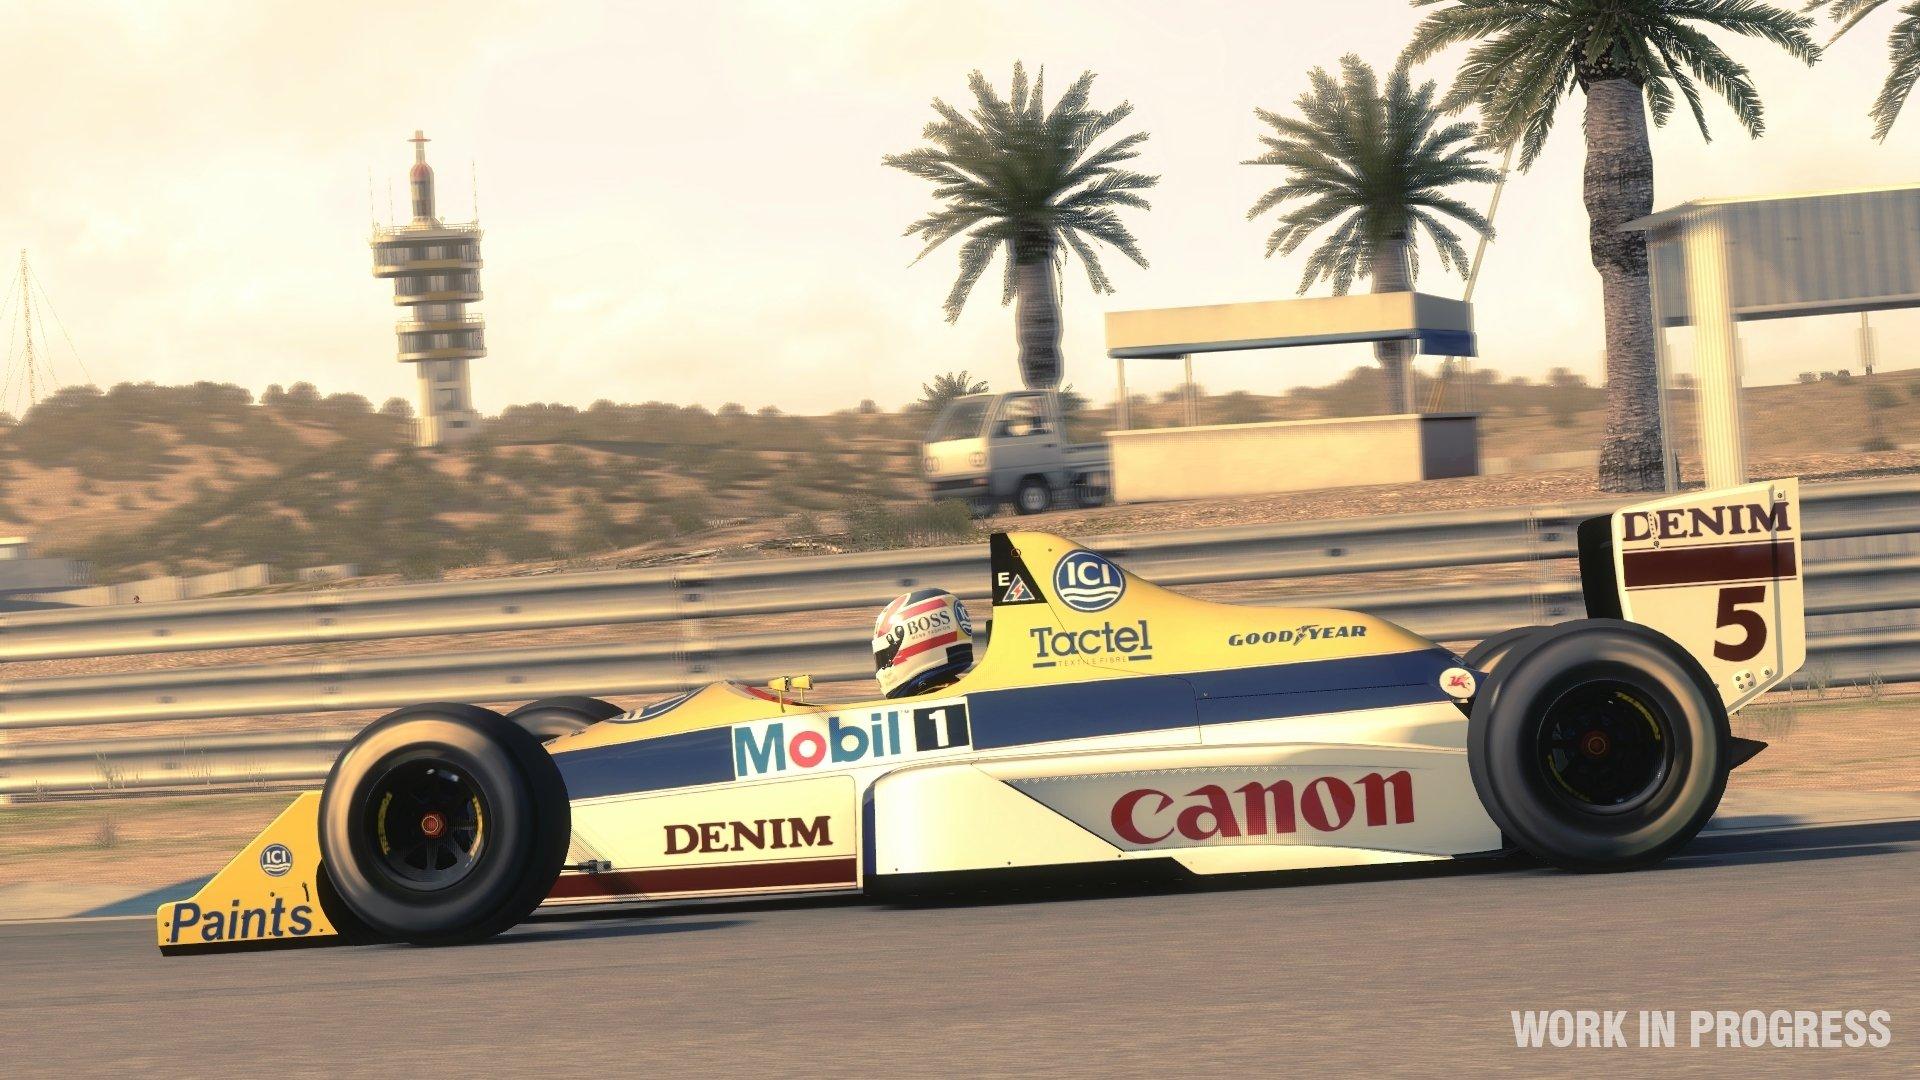 F1 2013 - PlayStation 3